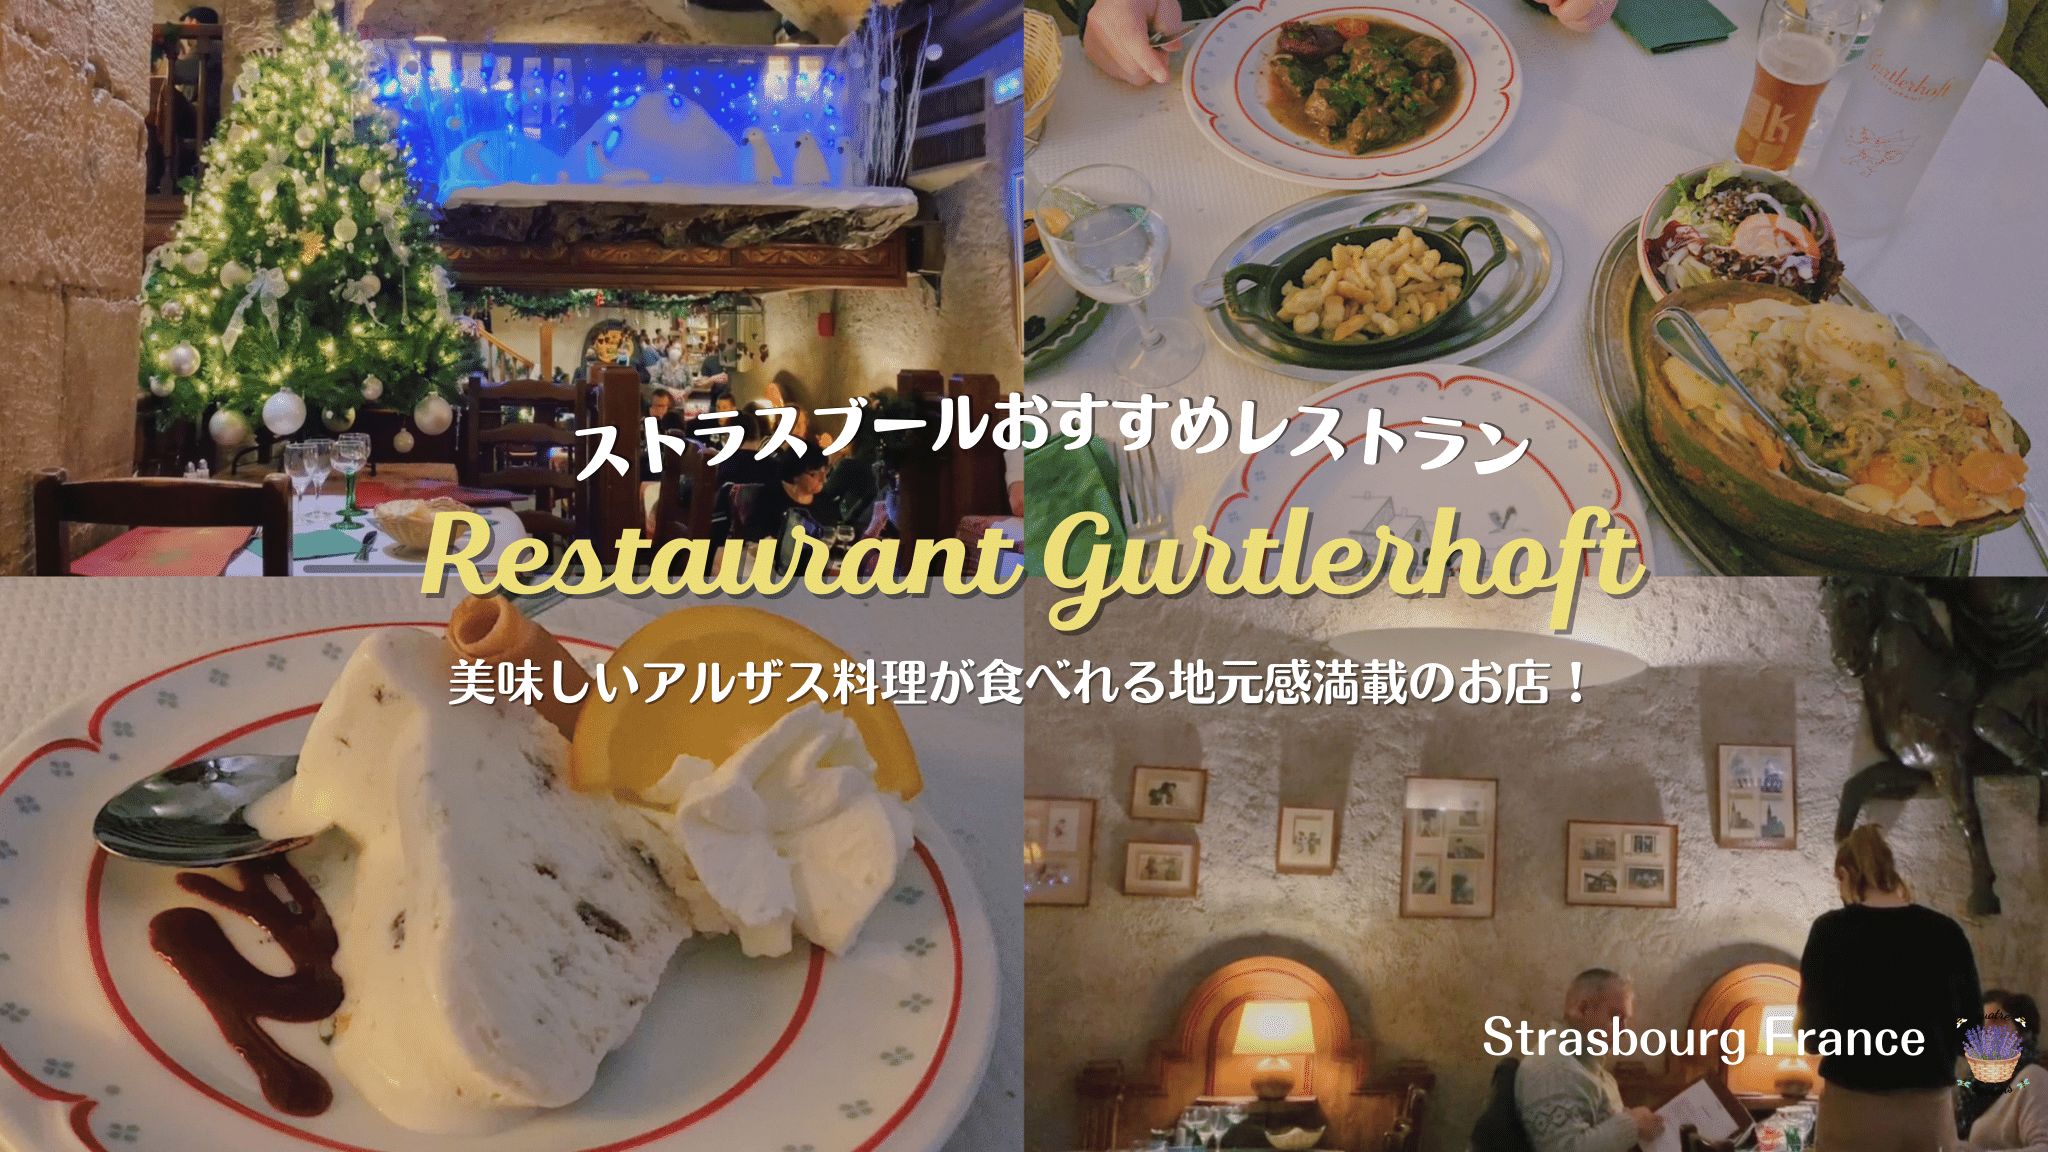 ストラスブールおすすめアルザスレストランRestaurant Gurtlerhoft